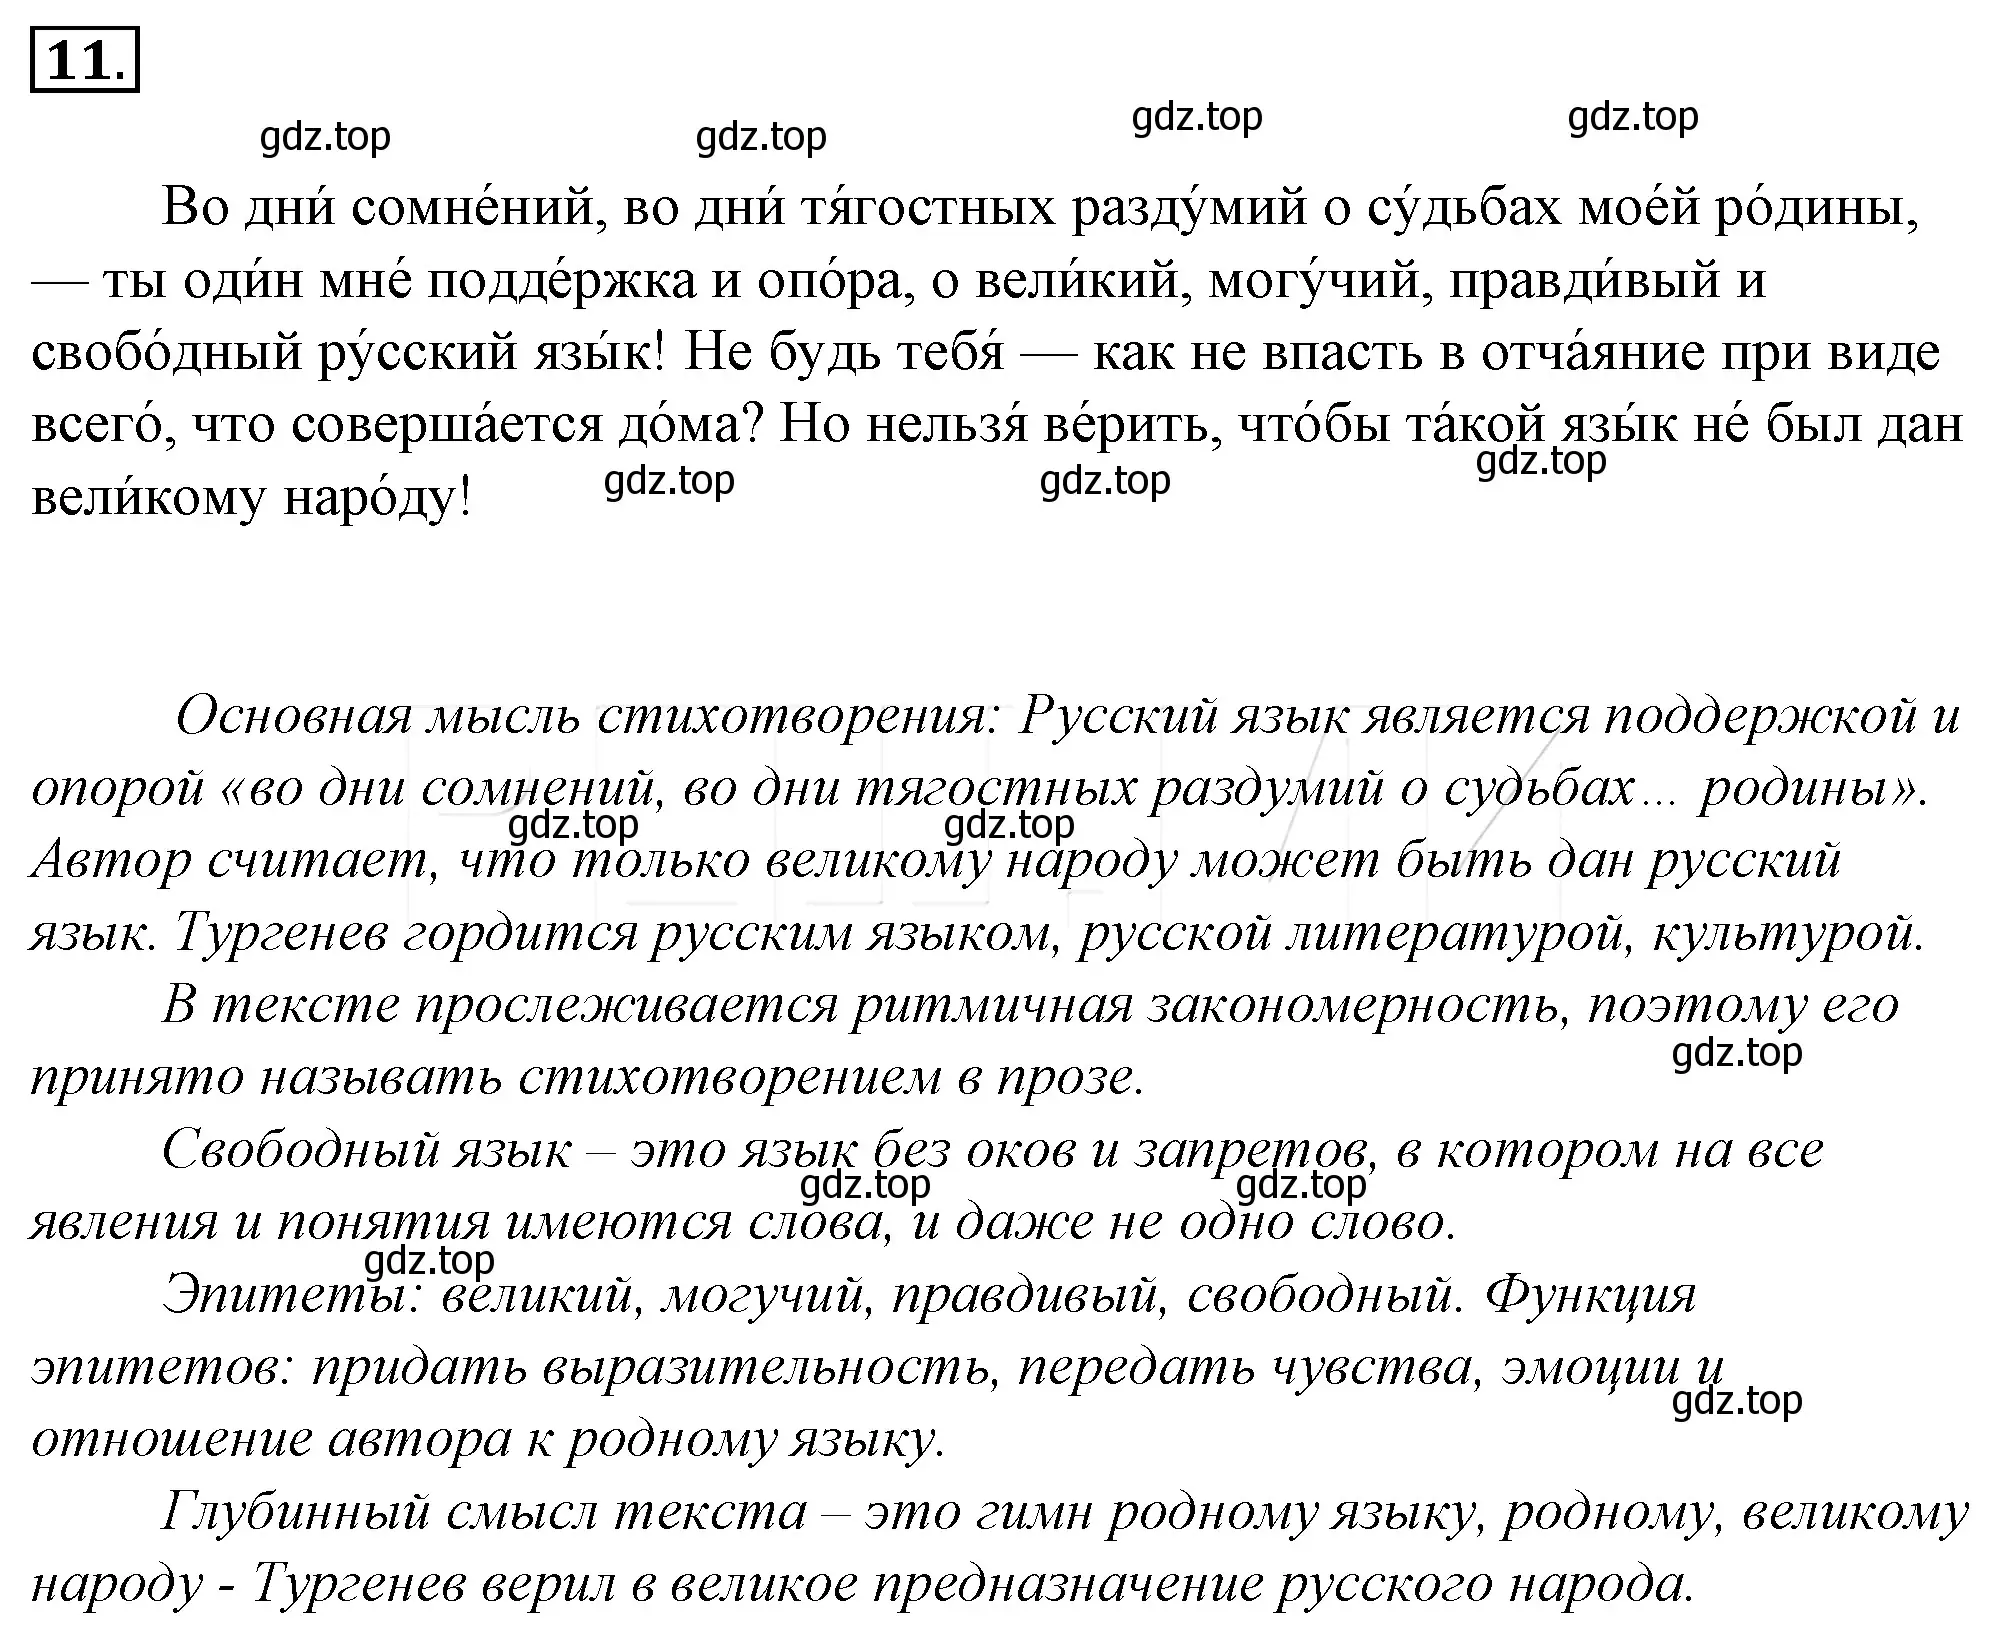 Решение 4. номер 32 (страница 39) гдз по русскому языку 10-11 класс Гольцова, Шамшин, учебник 1 часть